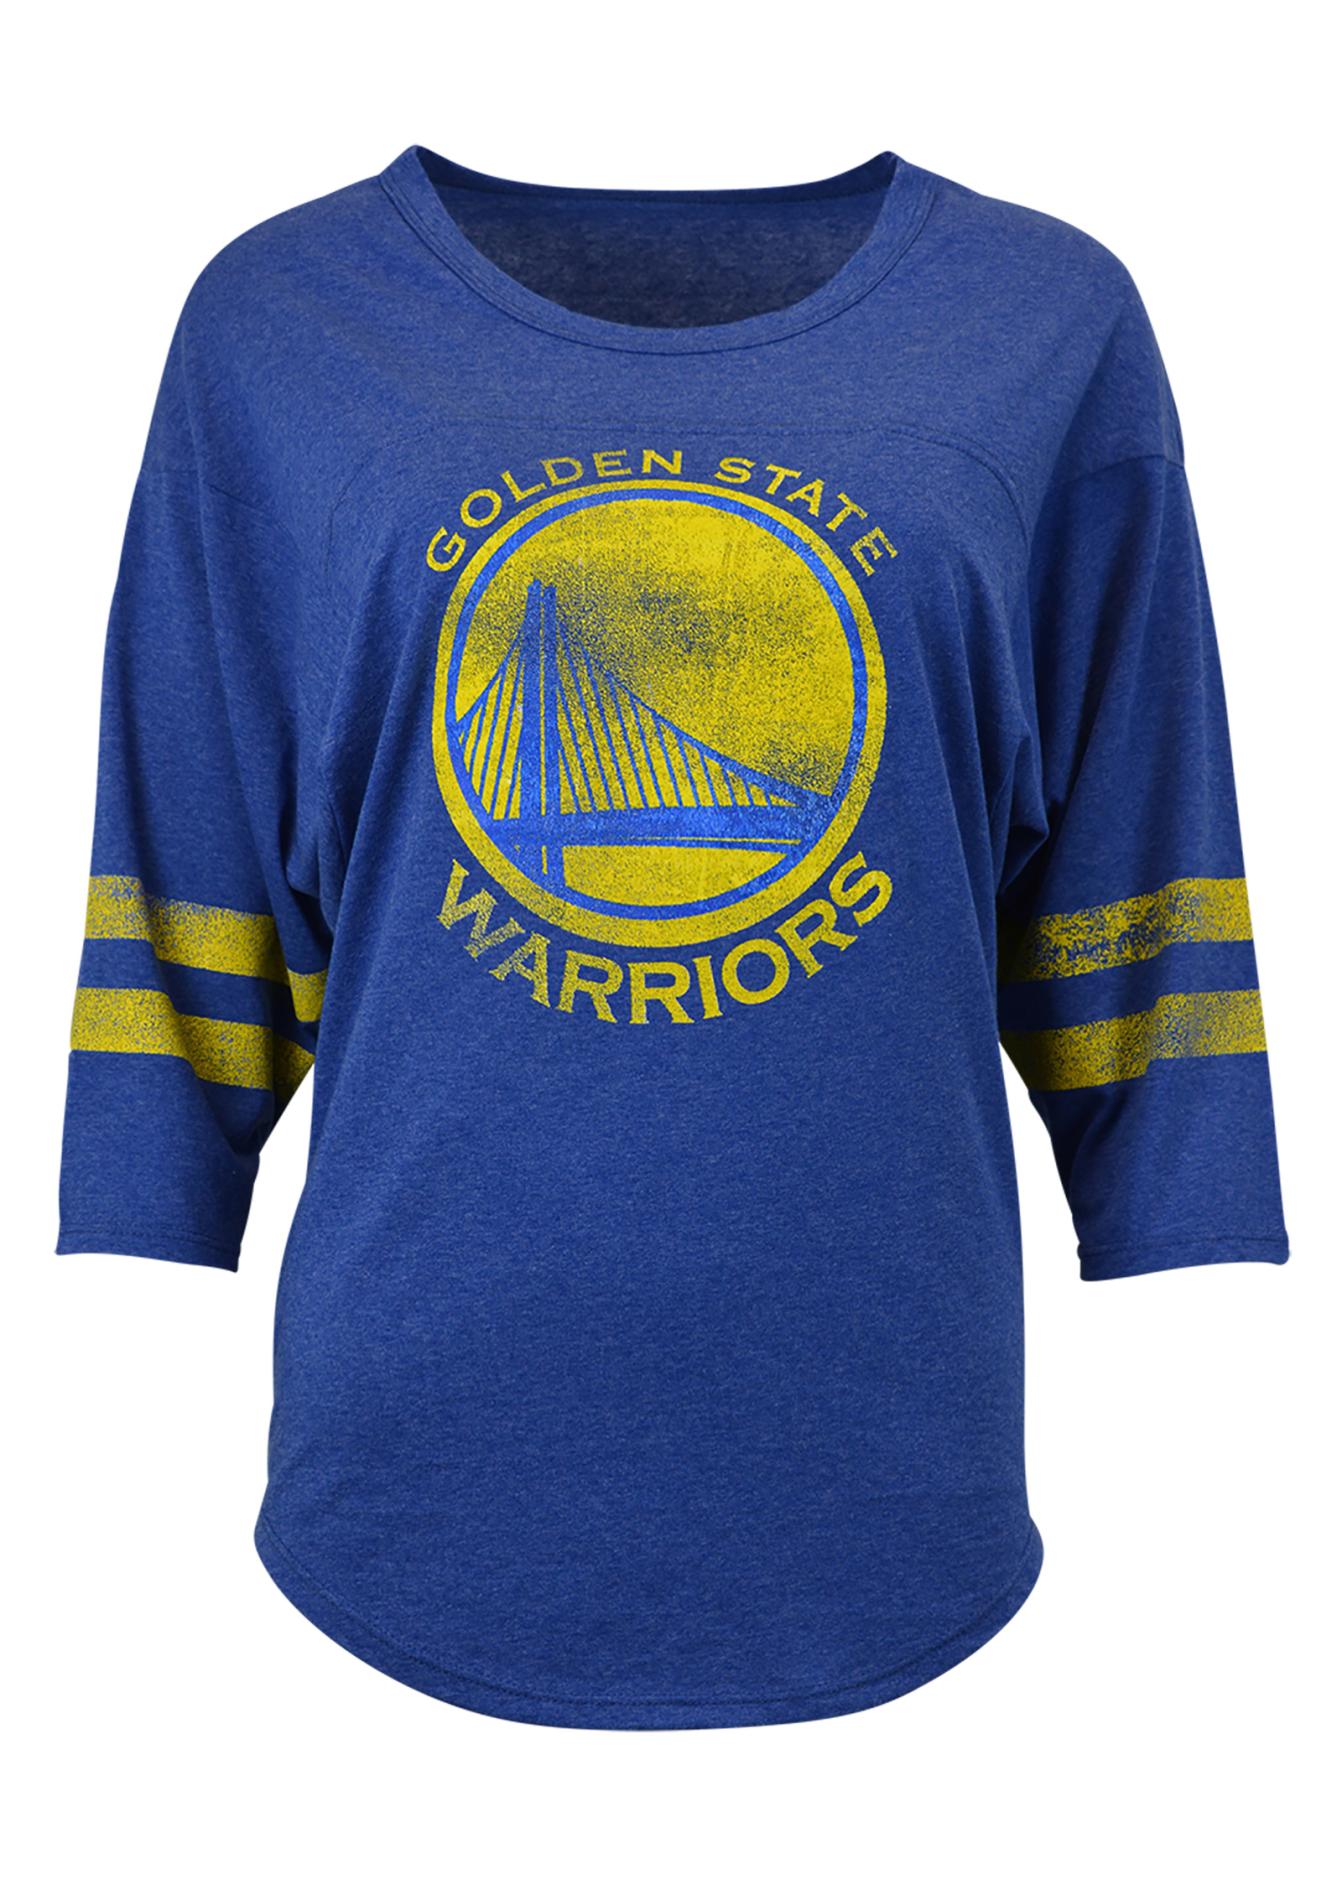 NBA Women's Dolman T-Shirt - Golden State Warriors